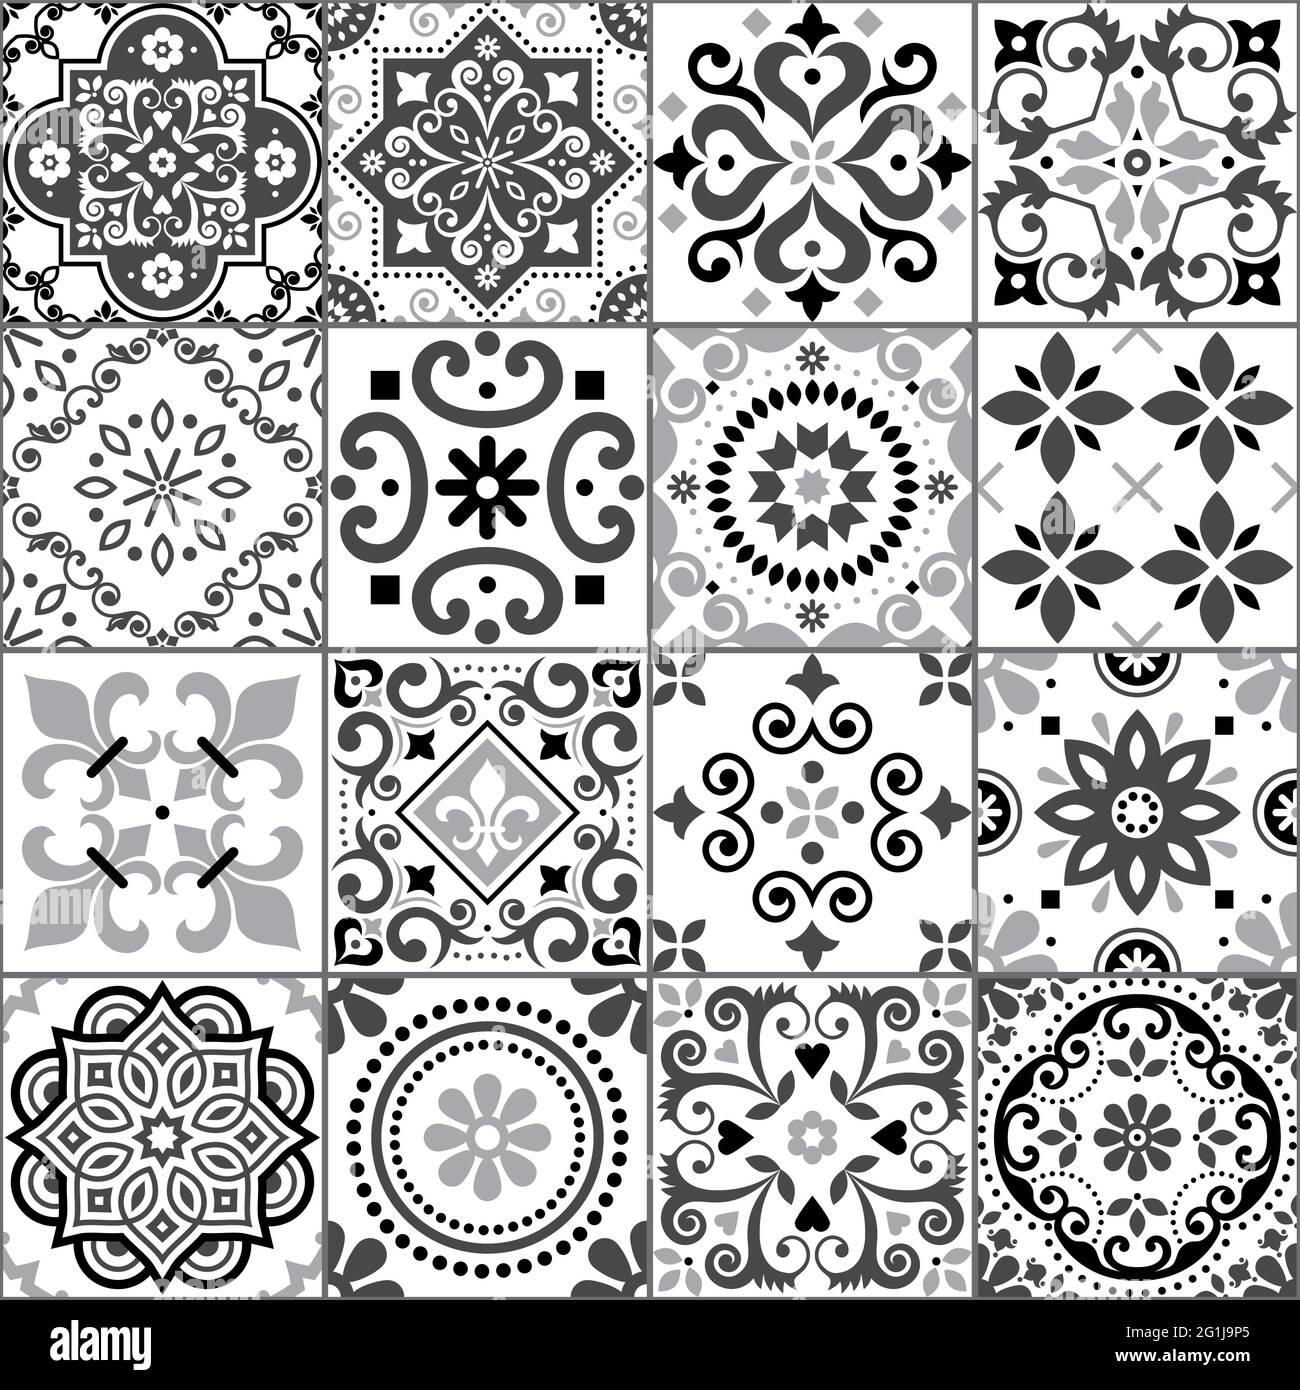 Portugiesische und spanische Azulejo Fliesen nahtlose Vektor-Muster-Kollektion in grau auf weiß, traditionelles florales Design großes Set von Fliesenkunst inspiriert Stock Vektor